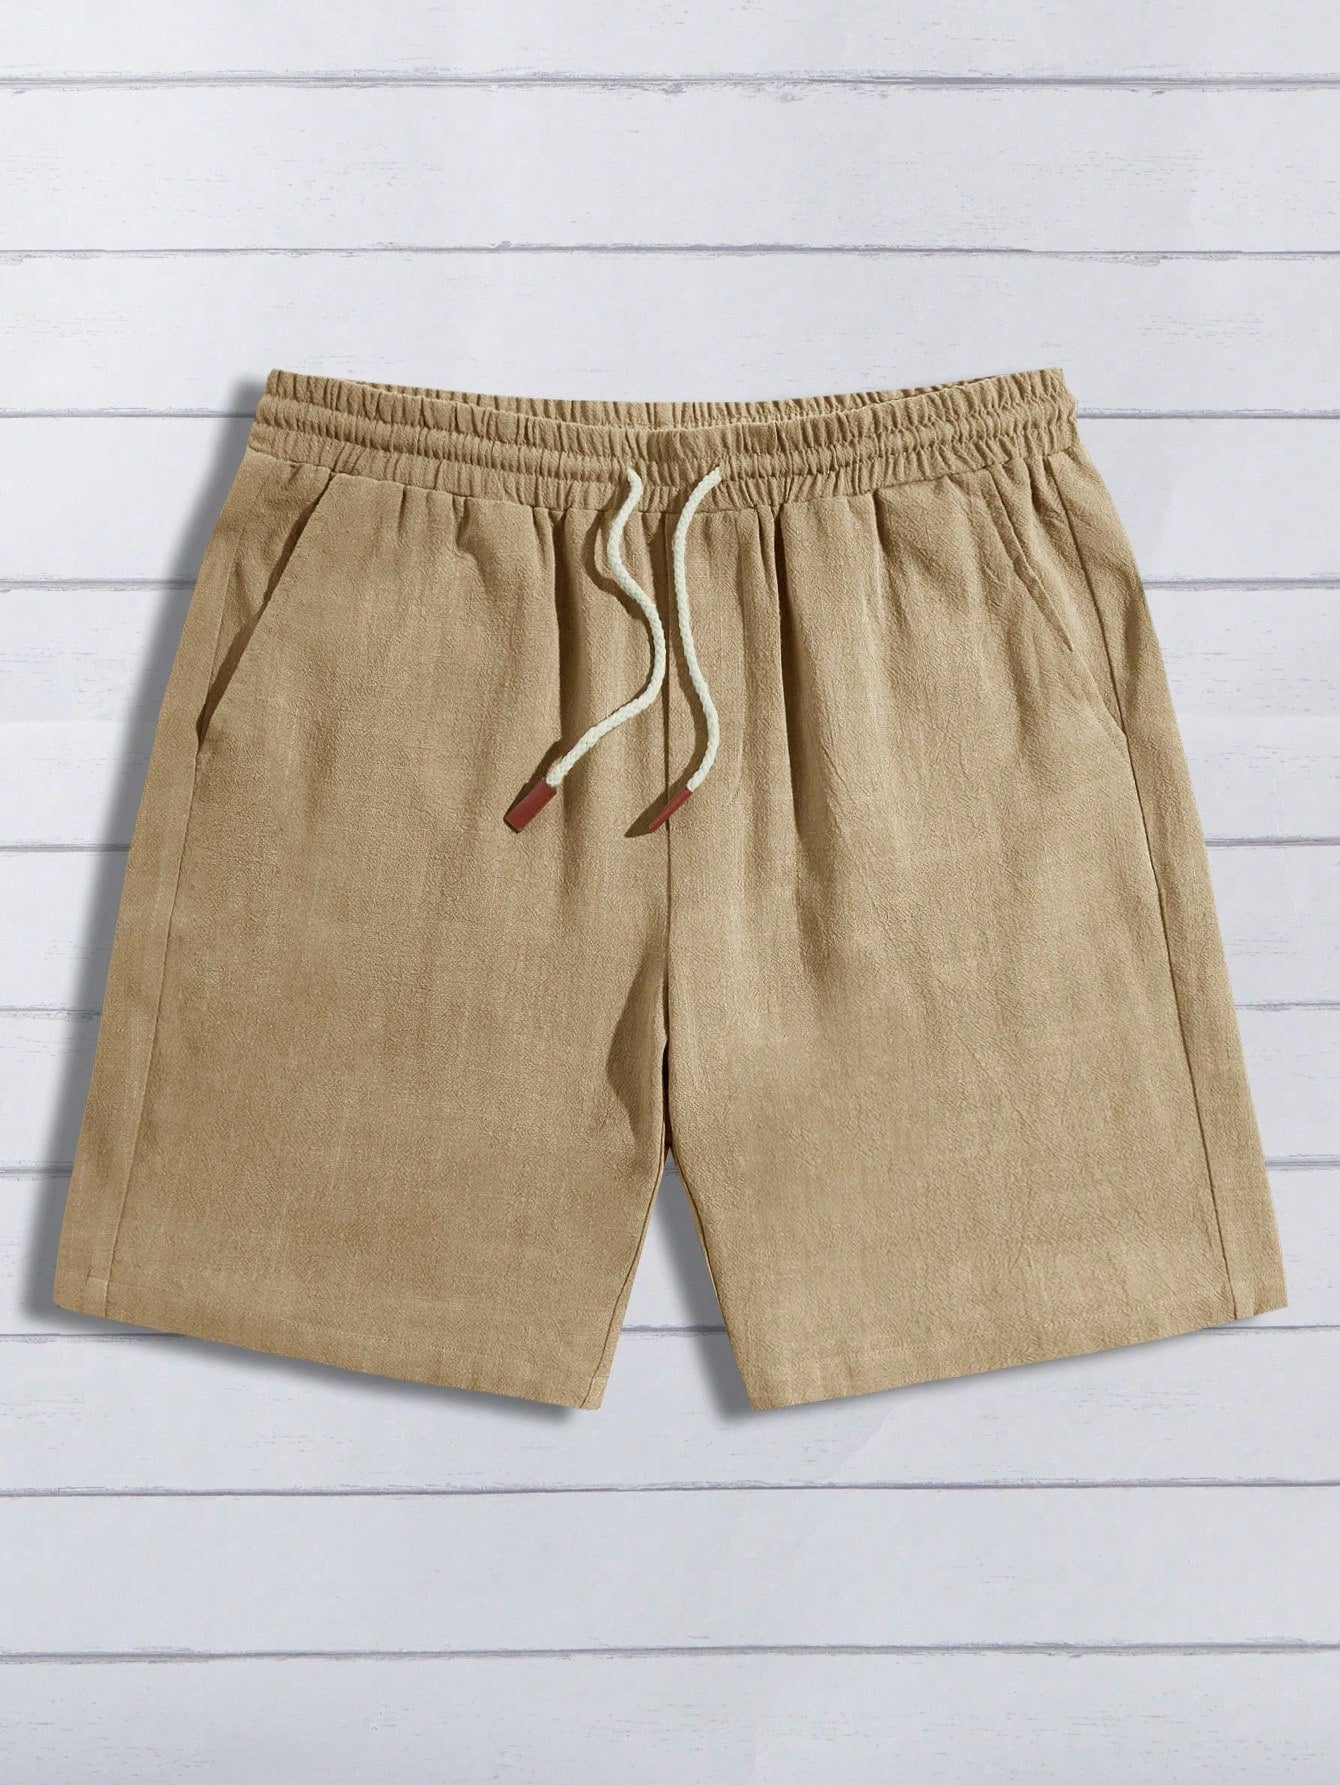 Men's Stylish Drawstring Woven Shorts